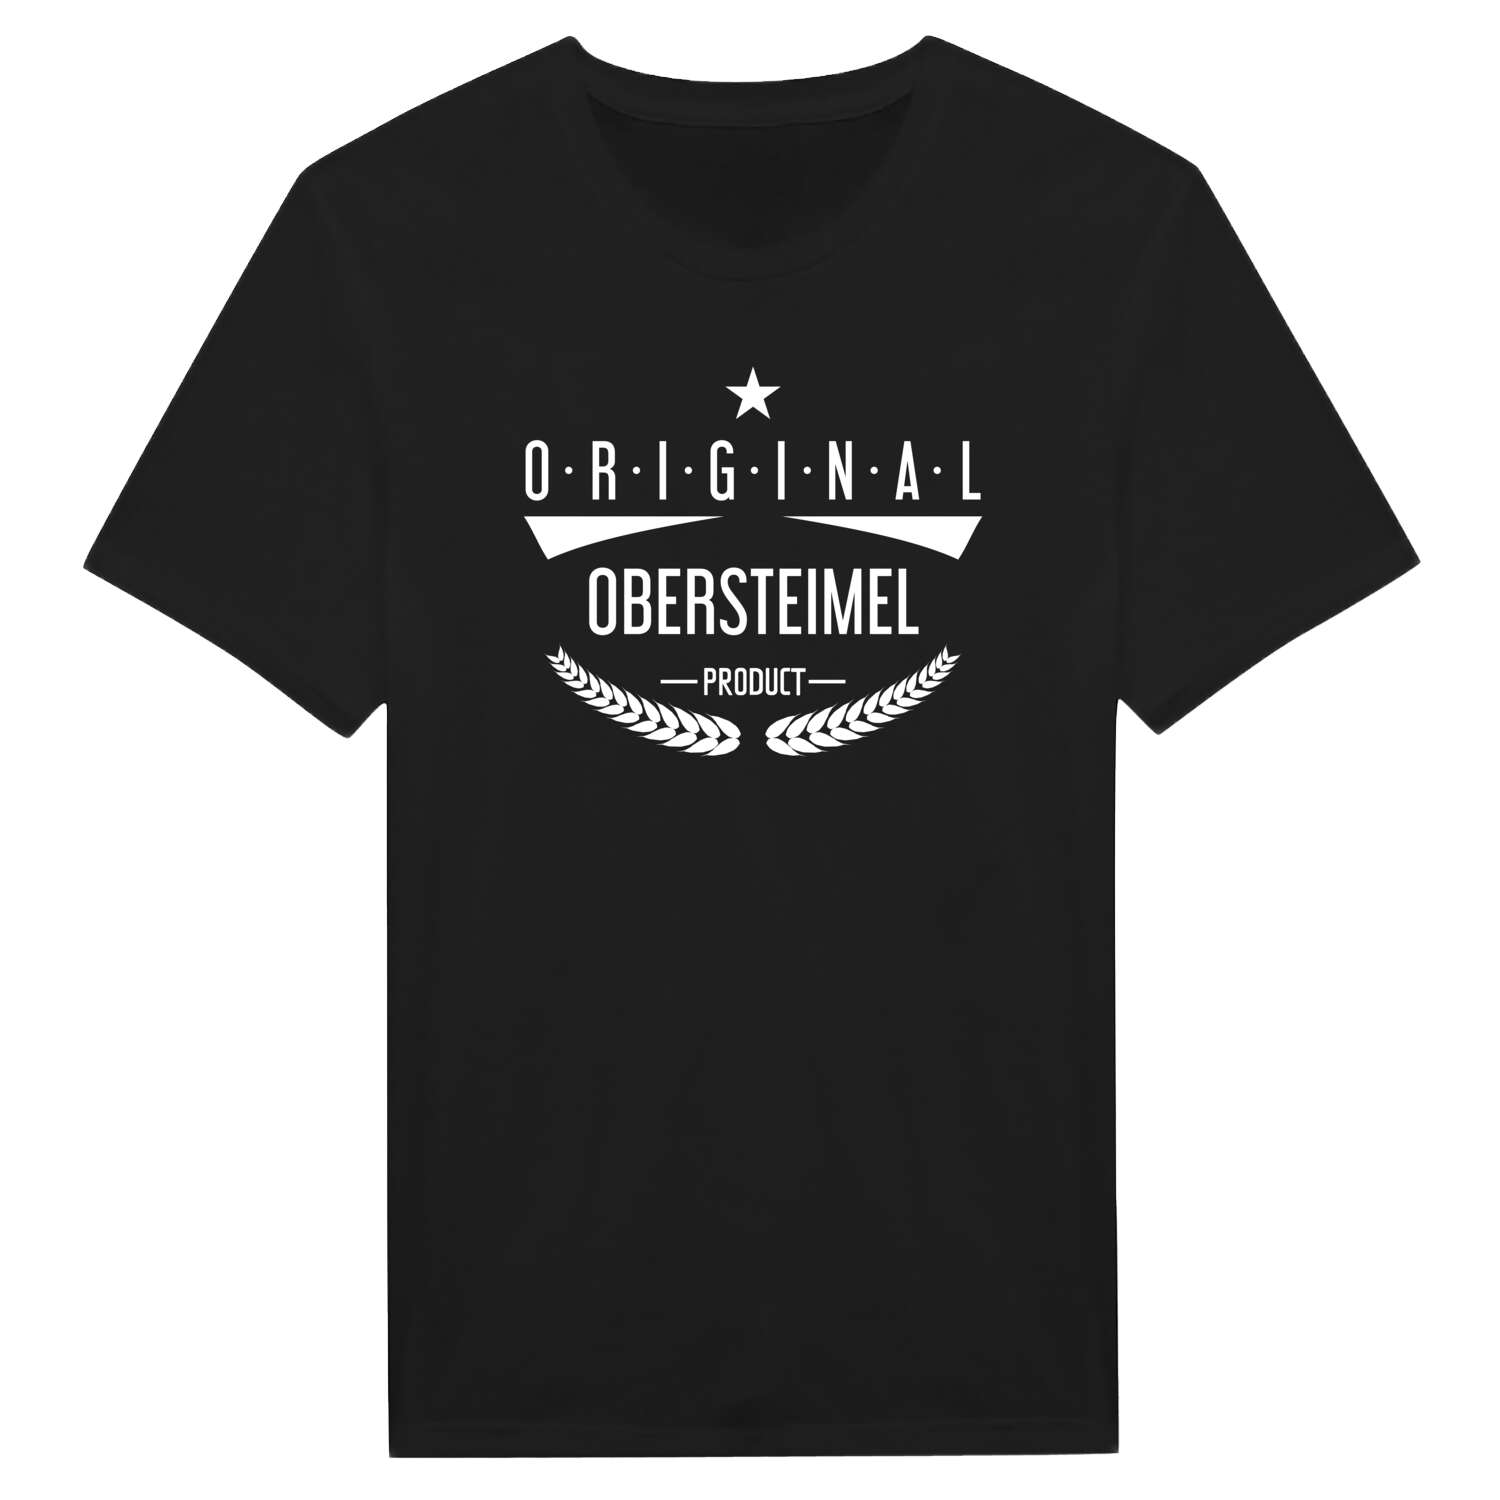 Obersteimel T-Shirt »Original Product«